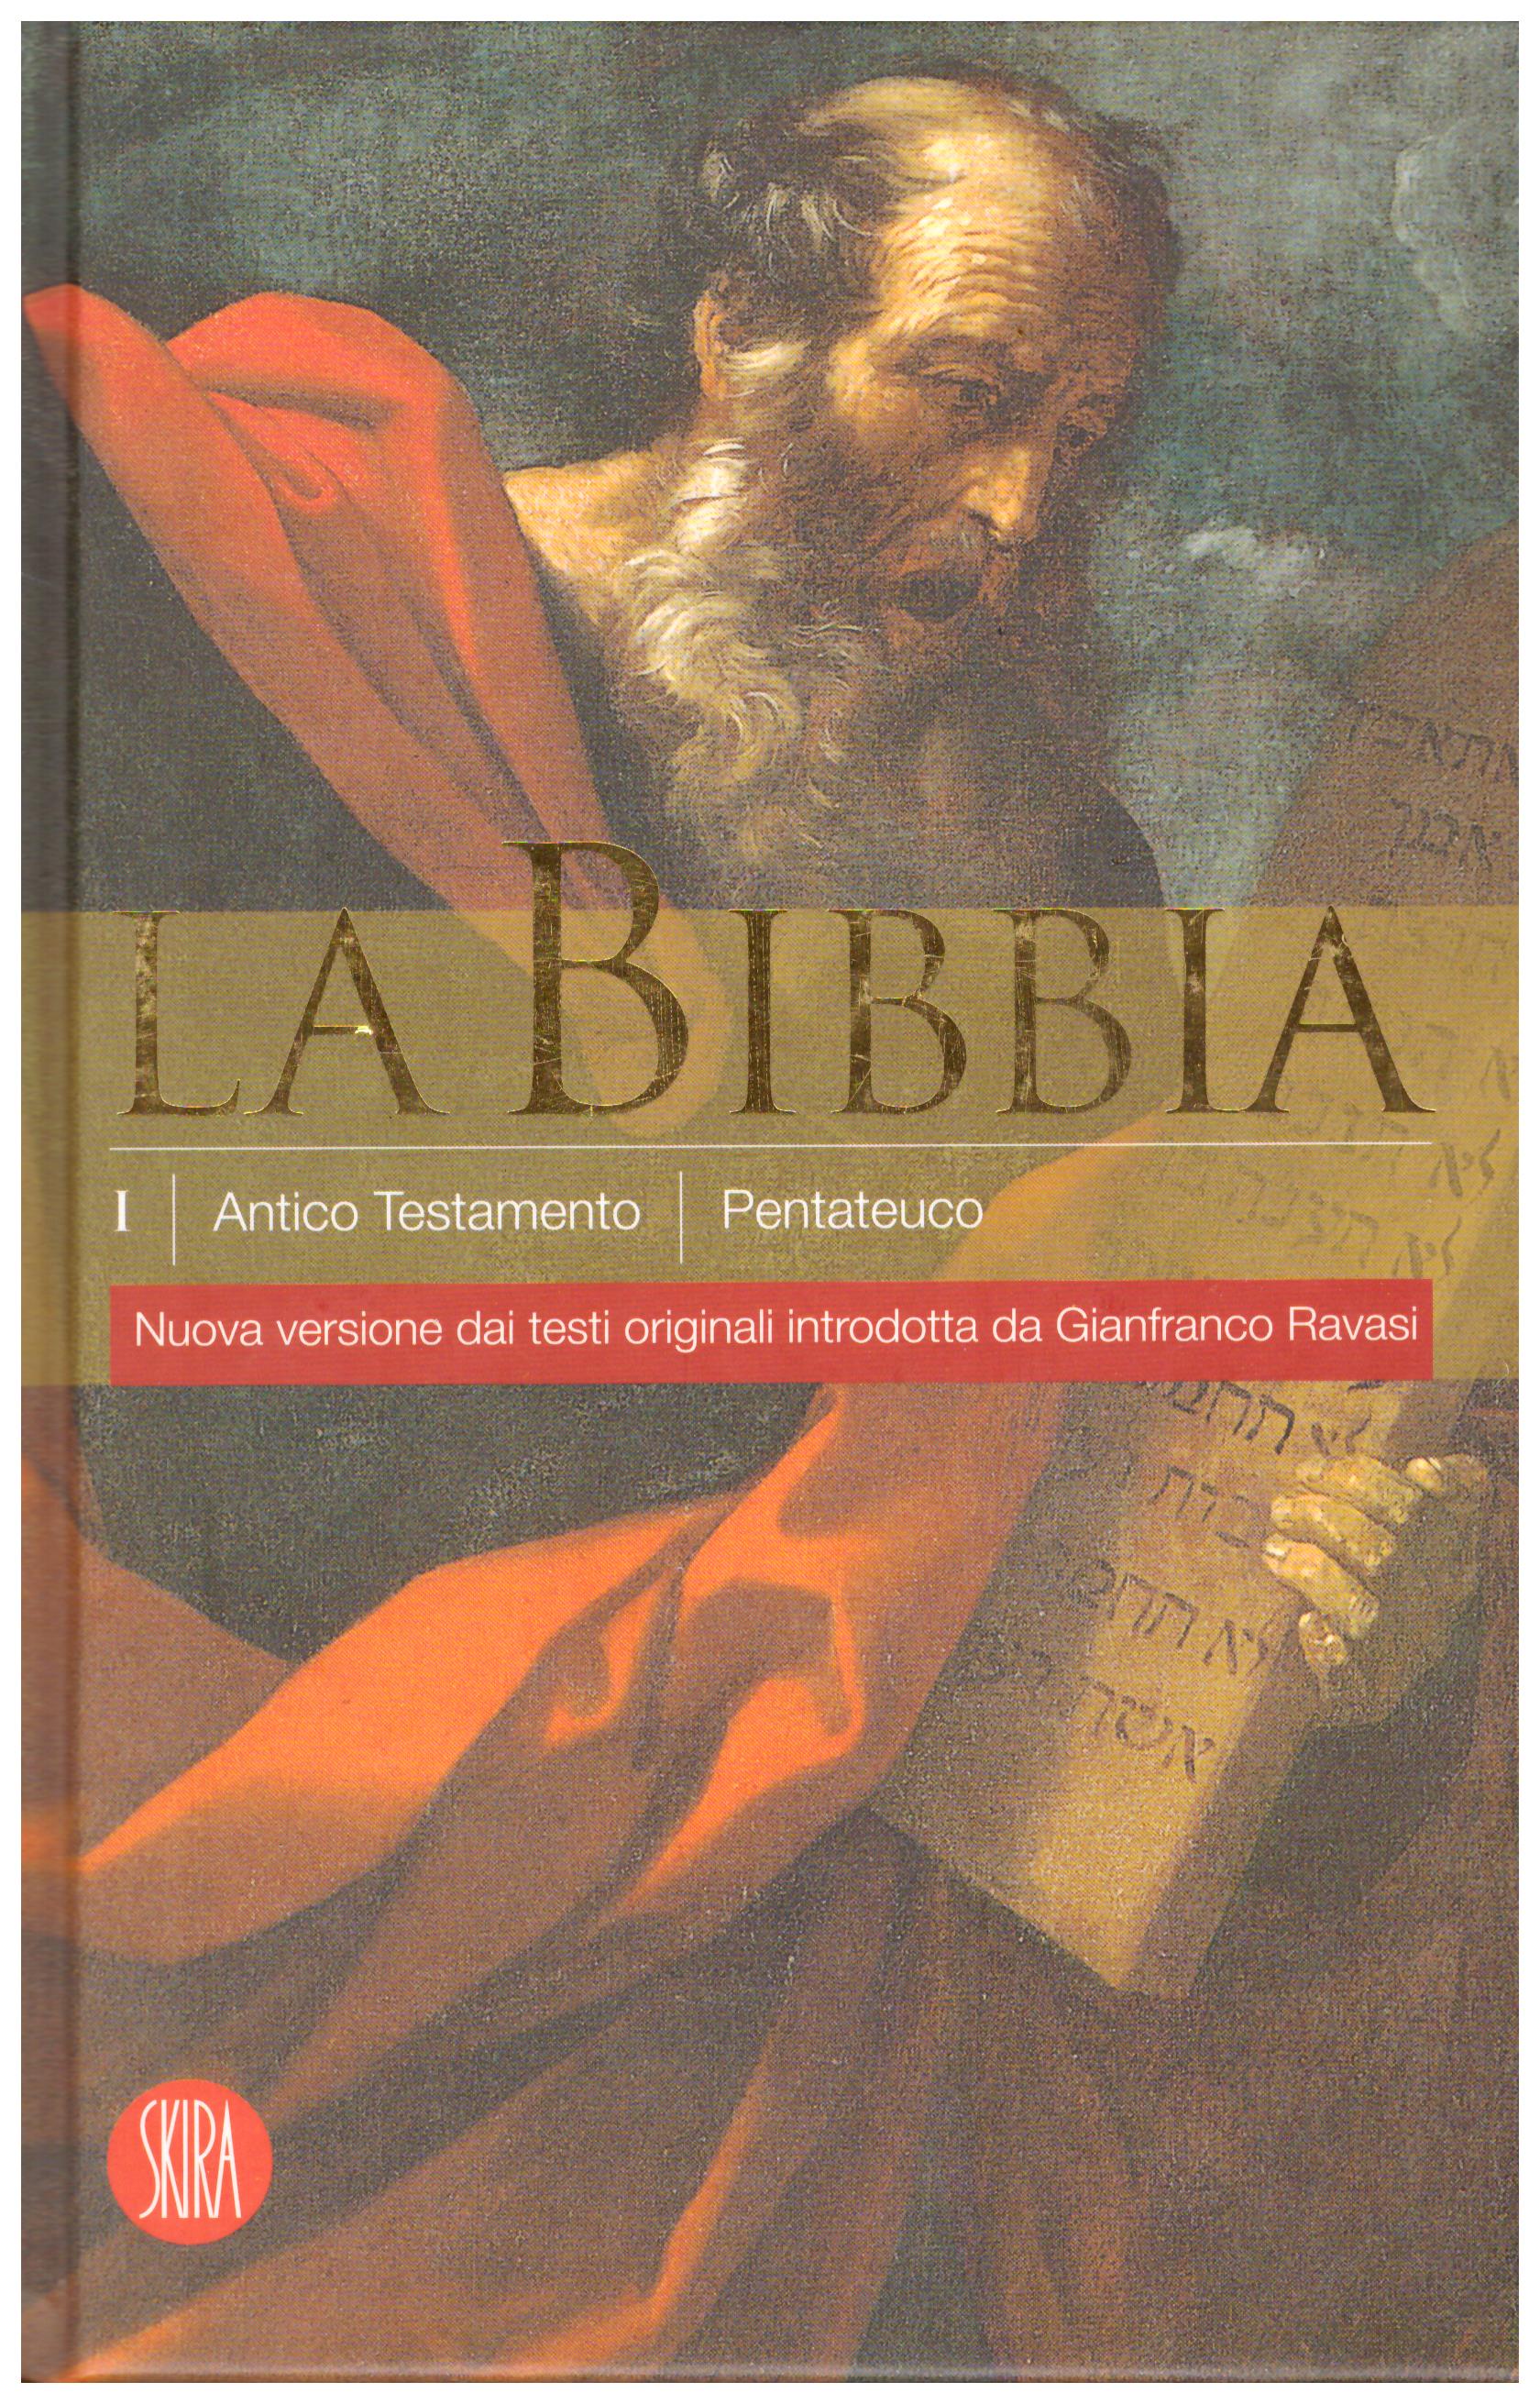 Titolo: La Bibbia antico testamento, Volume 1 Pentateuco Autore: AA.VV.  Editore: skira 2007